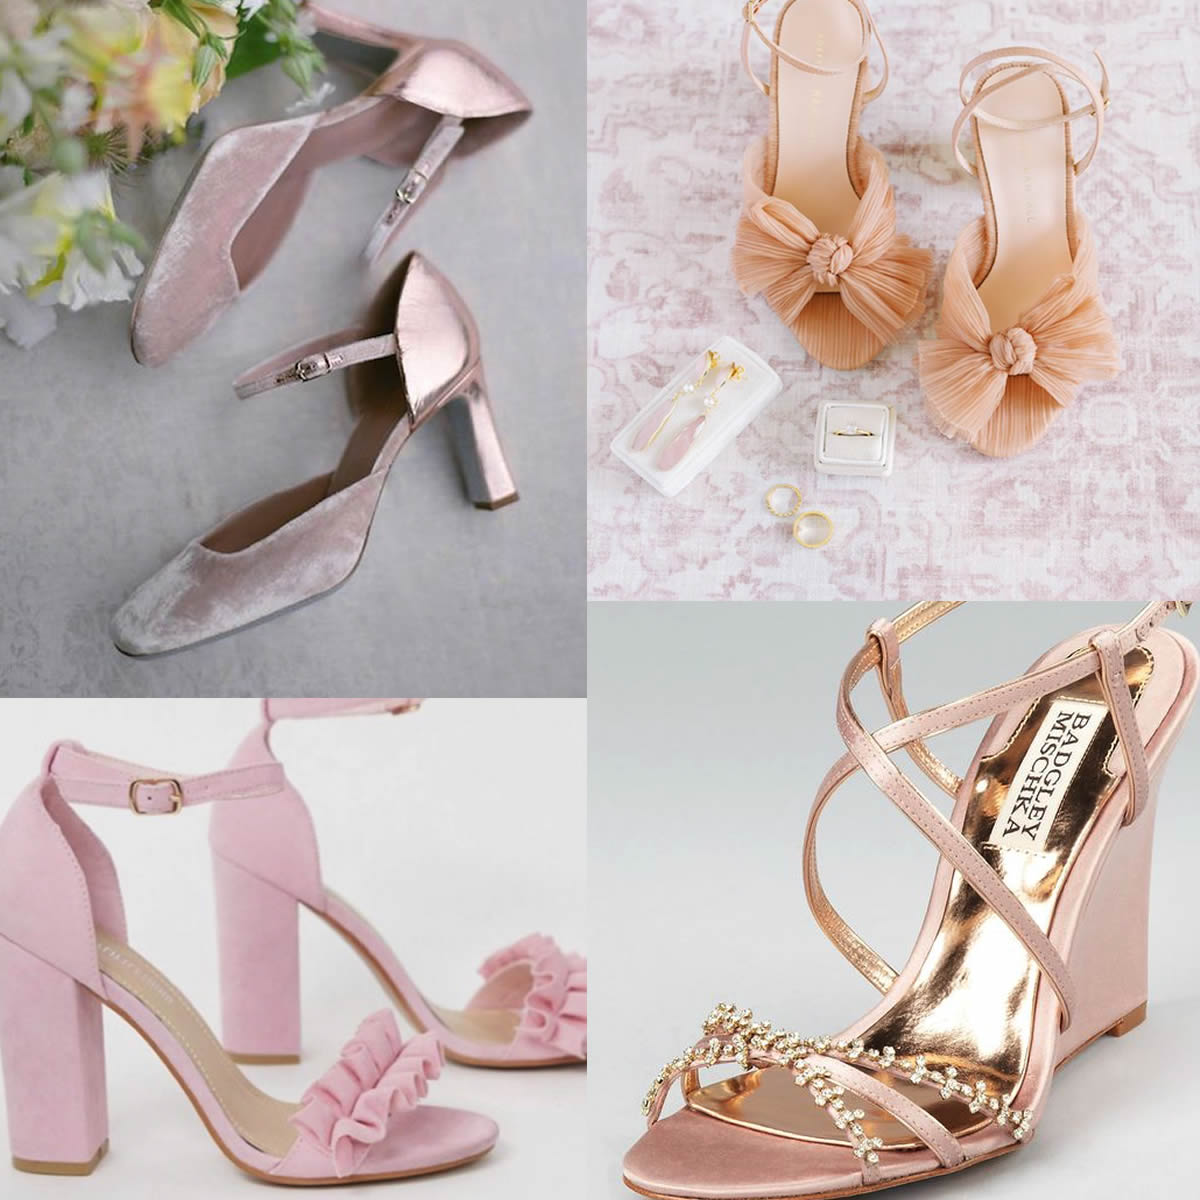 Forra tus zapatos de novia antes o después de la boda – Marilé Eventos  Wedding Planner